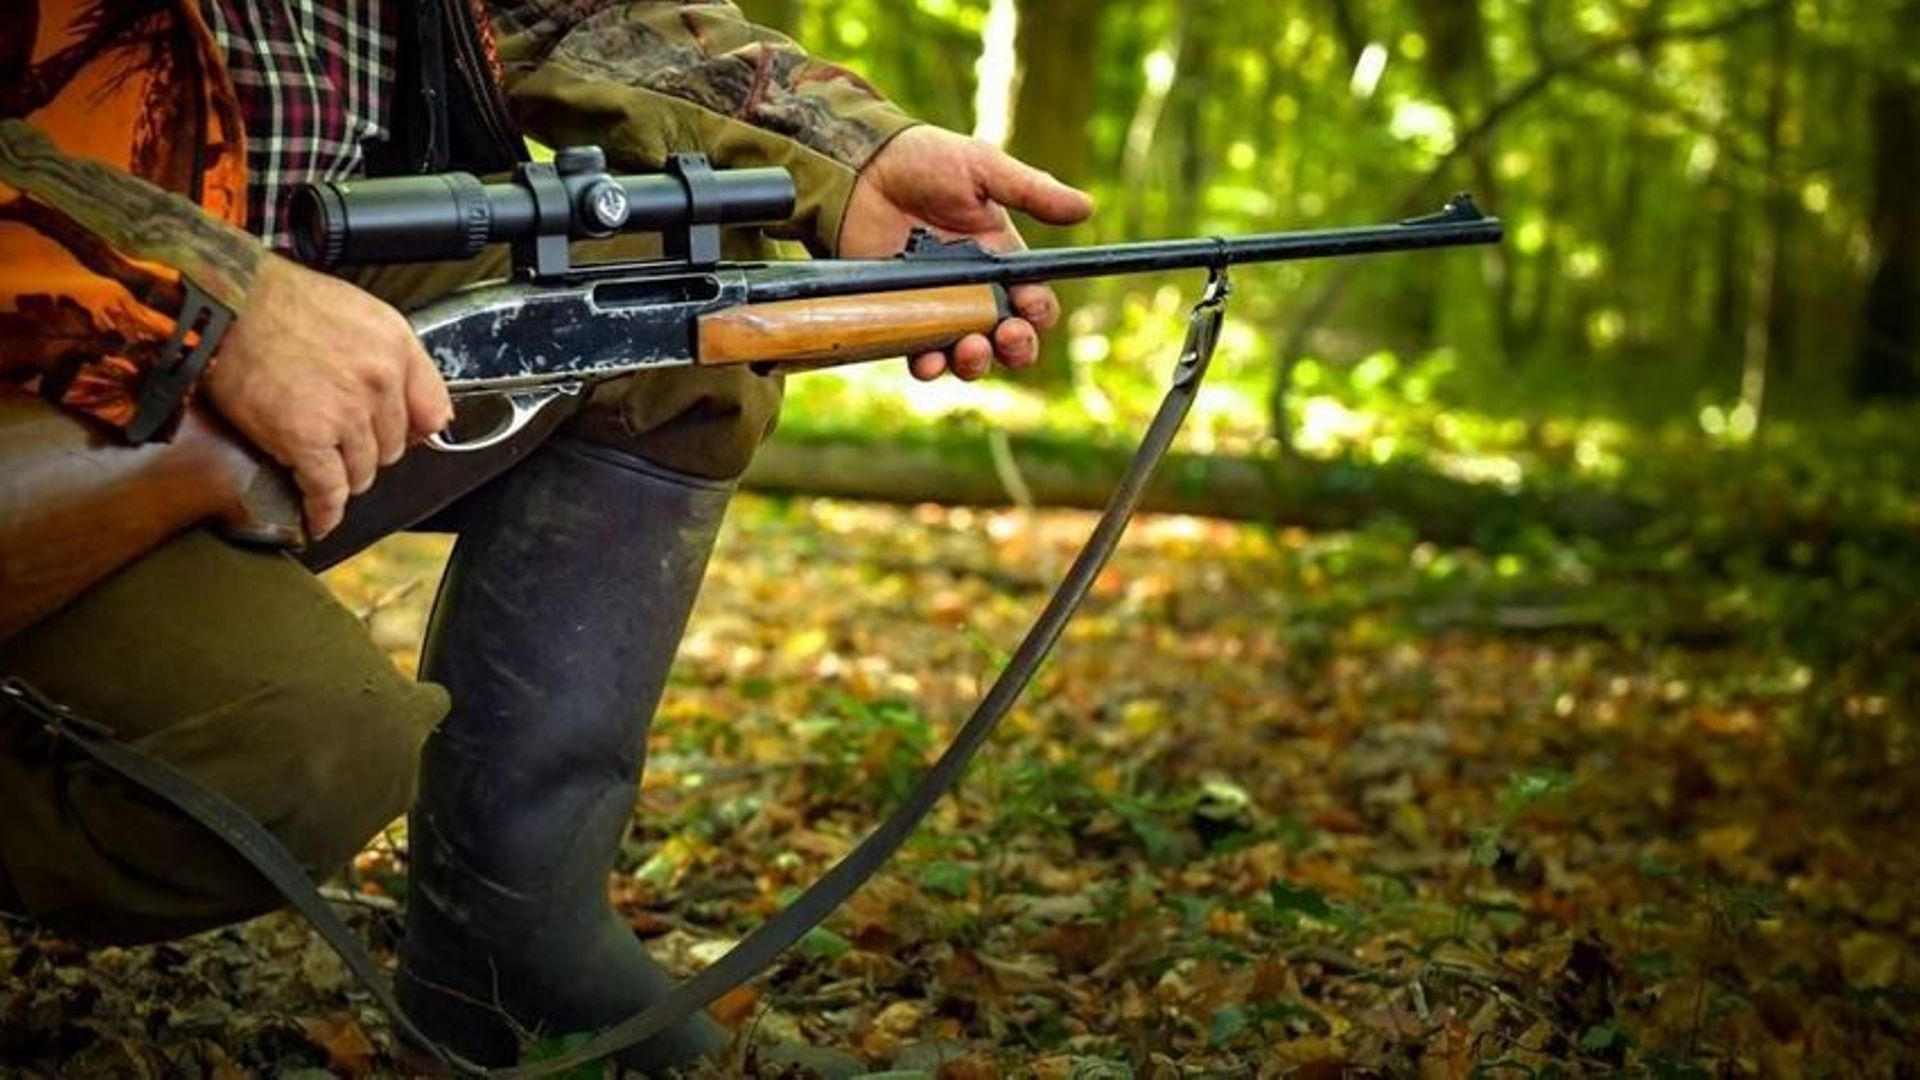 Des chasseurs demandent l'interdiction de pratiques jugées "abusives et excessives"